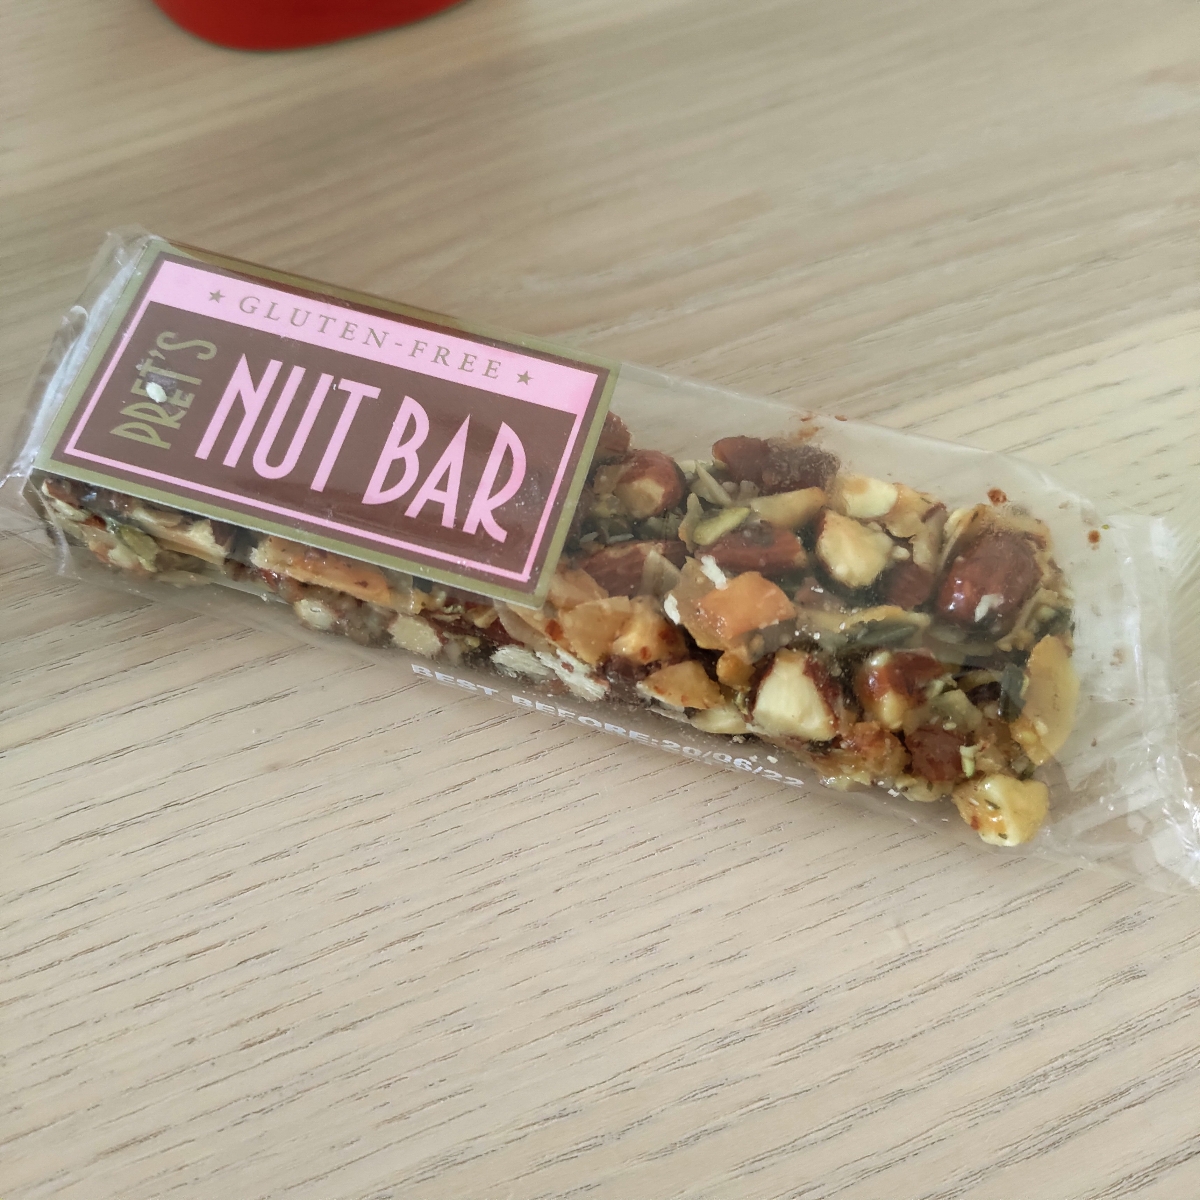 Pret A Manger Gluten-free Nut Bar Reviews | abillion